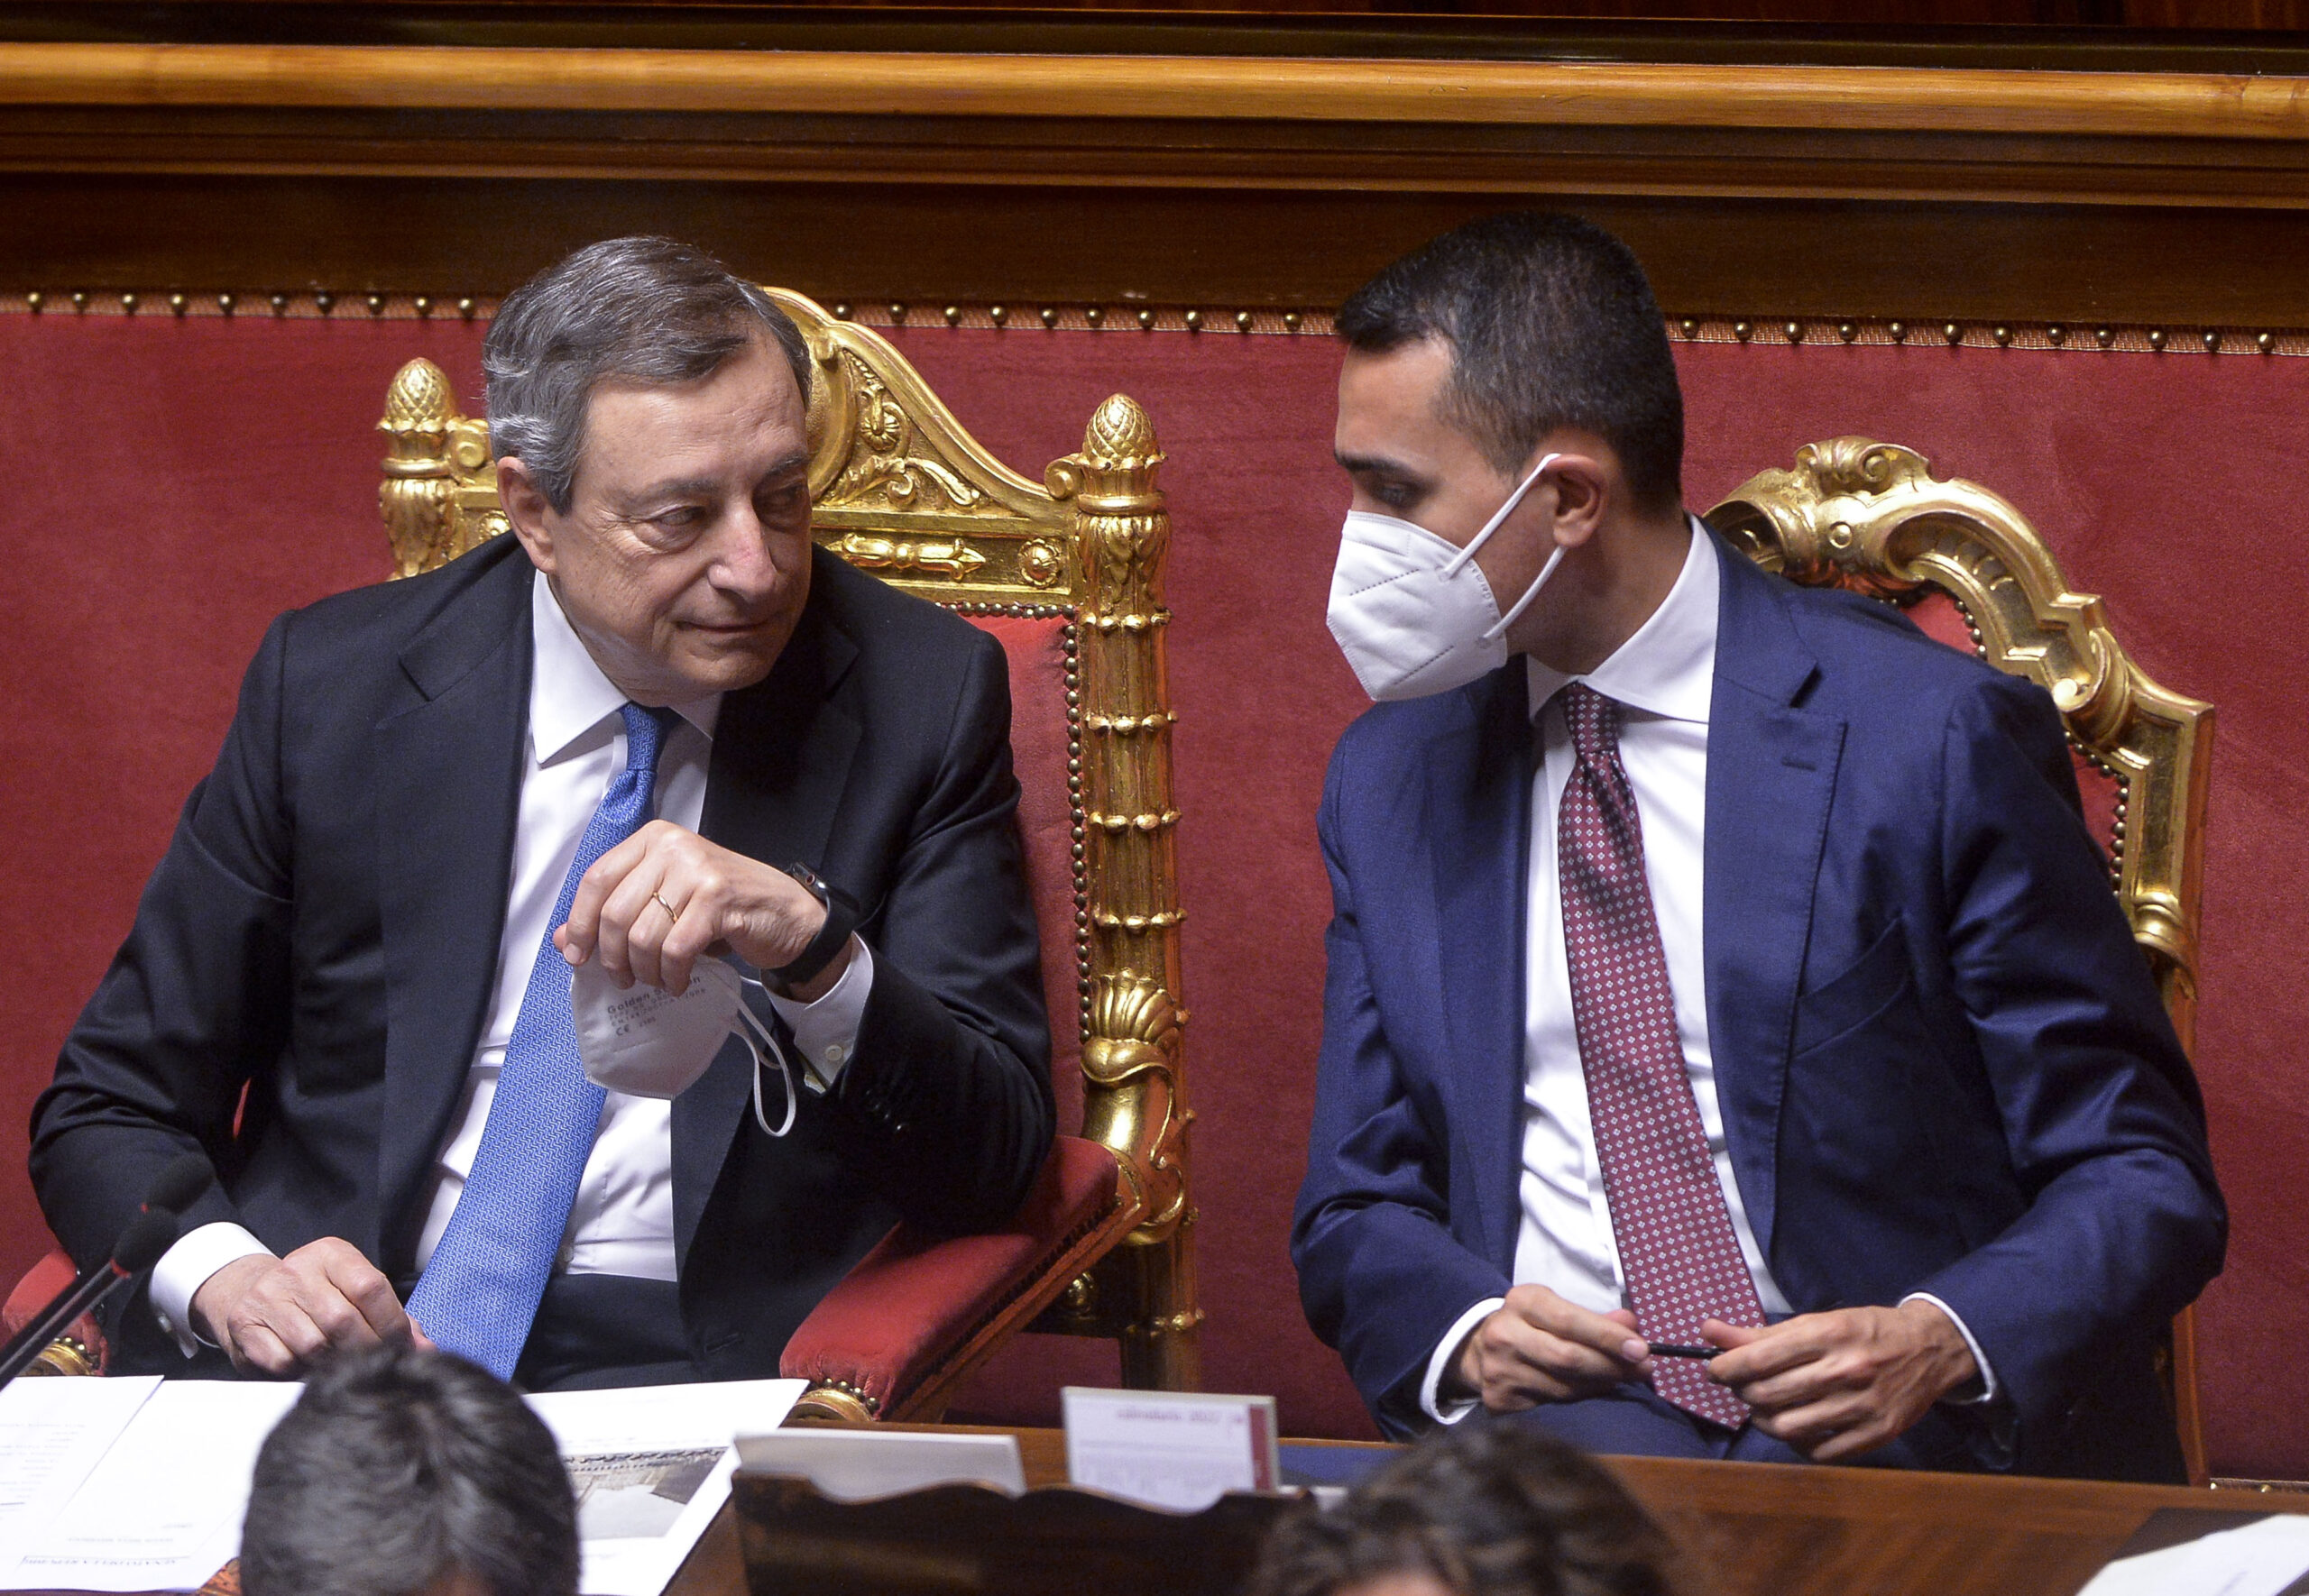 Mario Draghi e Luigi Di Maio al Senato (Fotogramma)